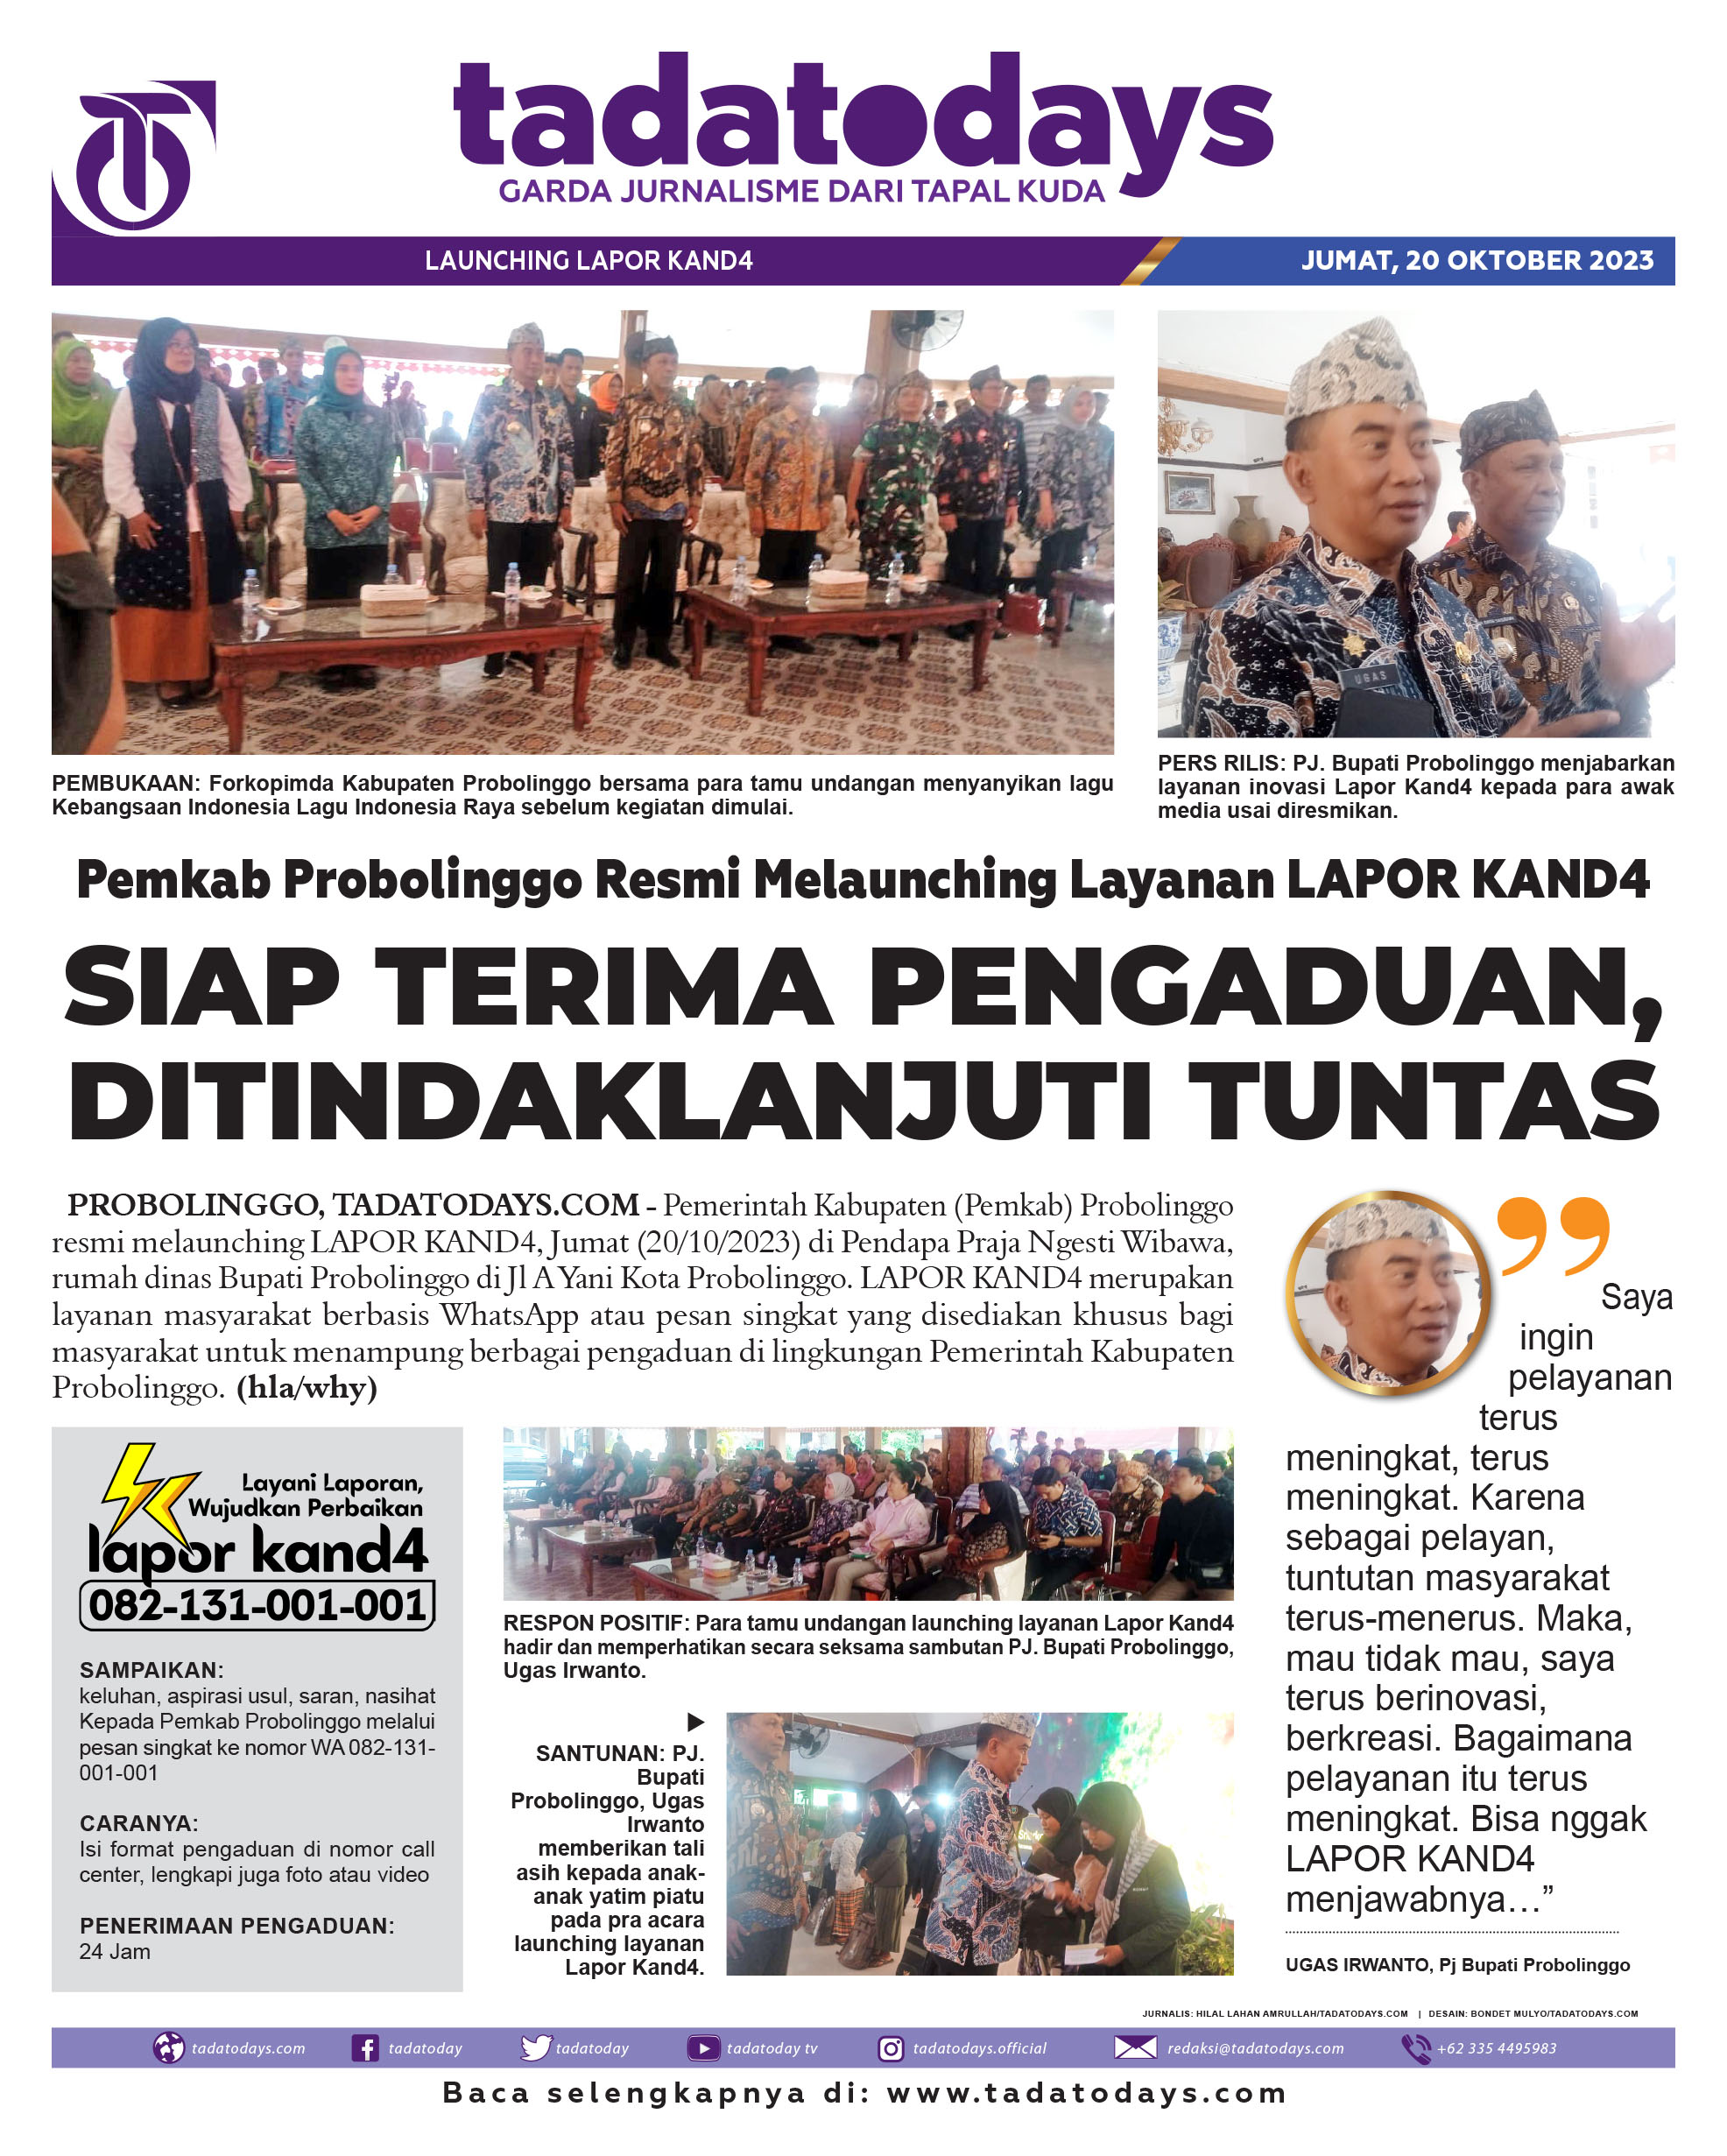 Pemkab Probolinggo Resmi Launching Layanan LAPOR KAND4